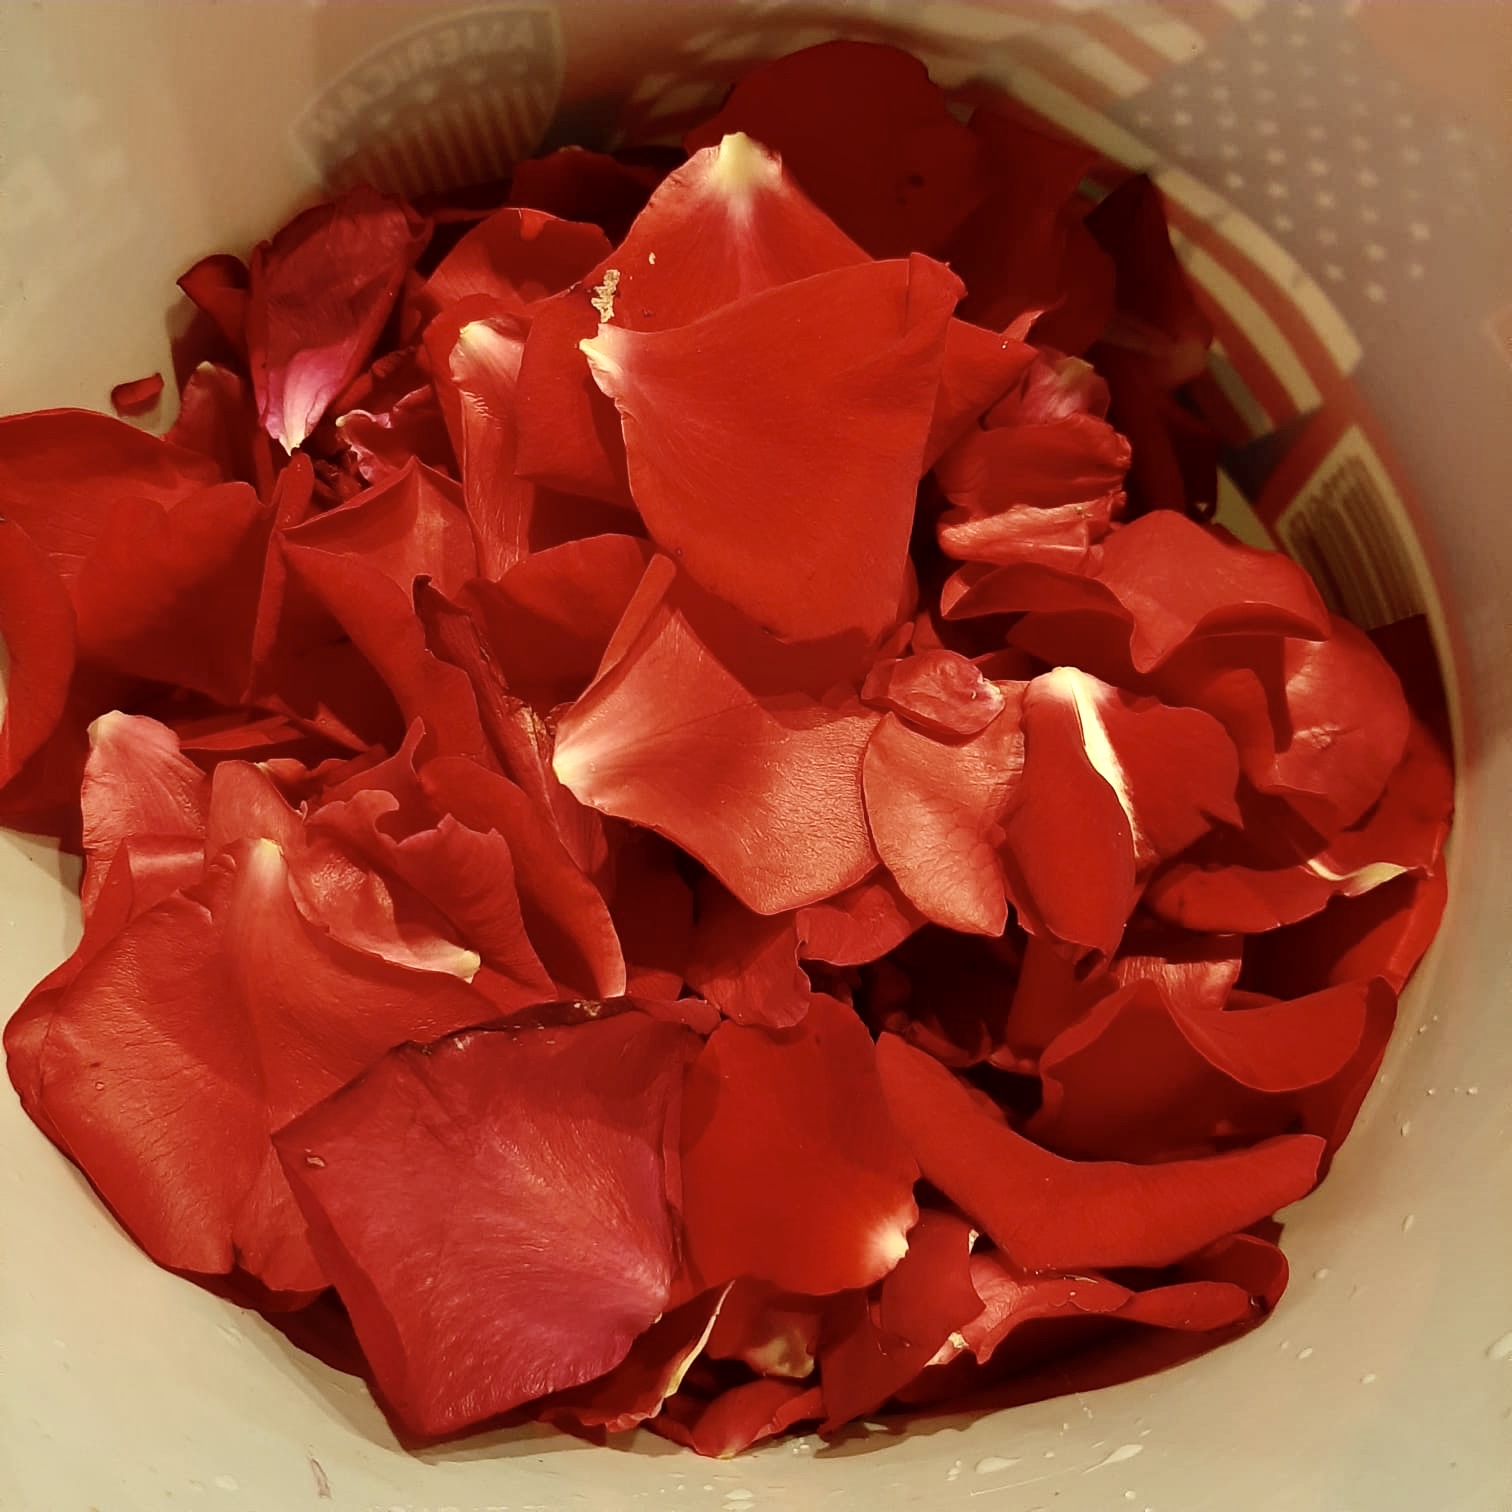 Bild zum Schritt 11 für die Kinder-Beschäftigung: 'Saubere Rosenblätter in einen hitzebeständigen Krug geben.'